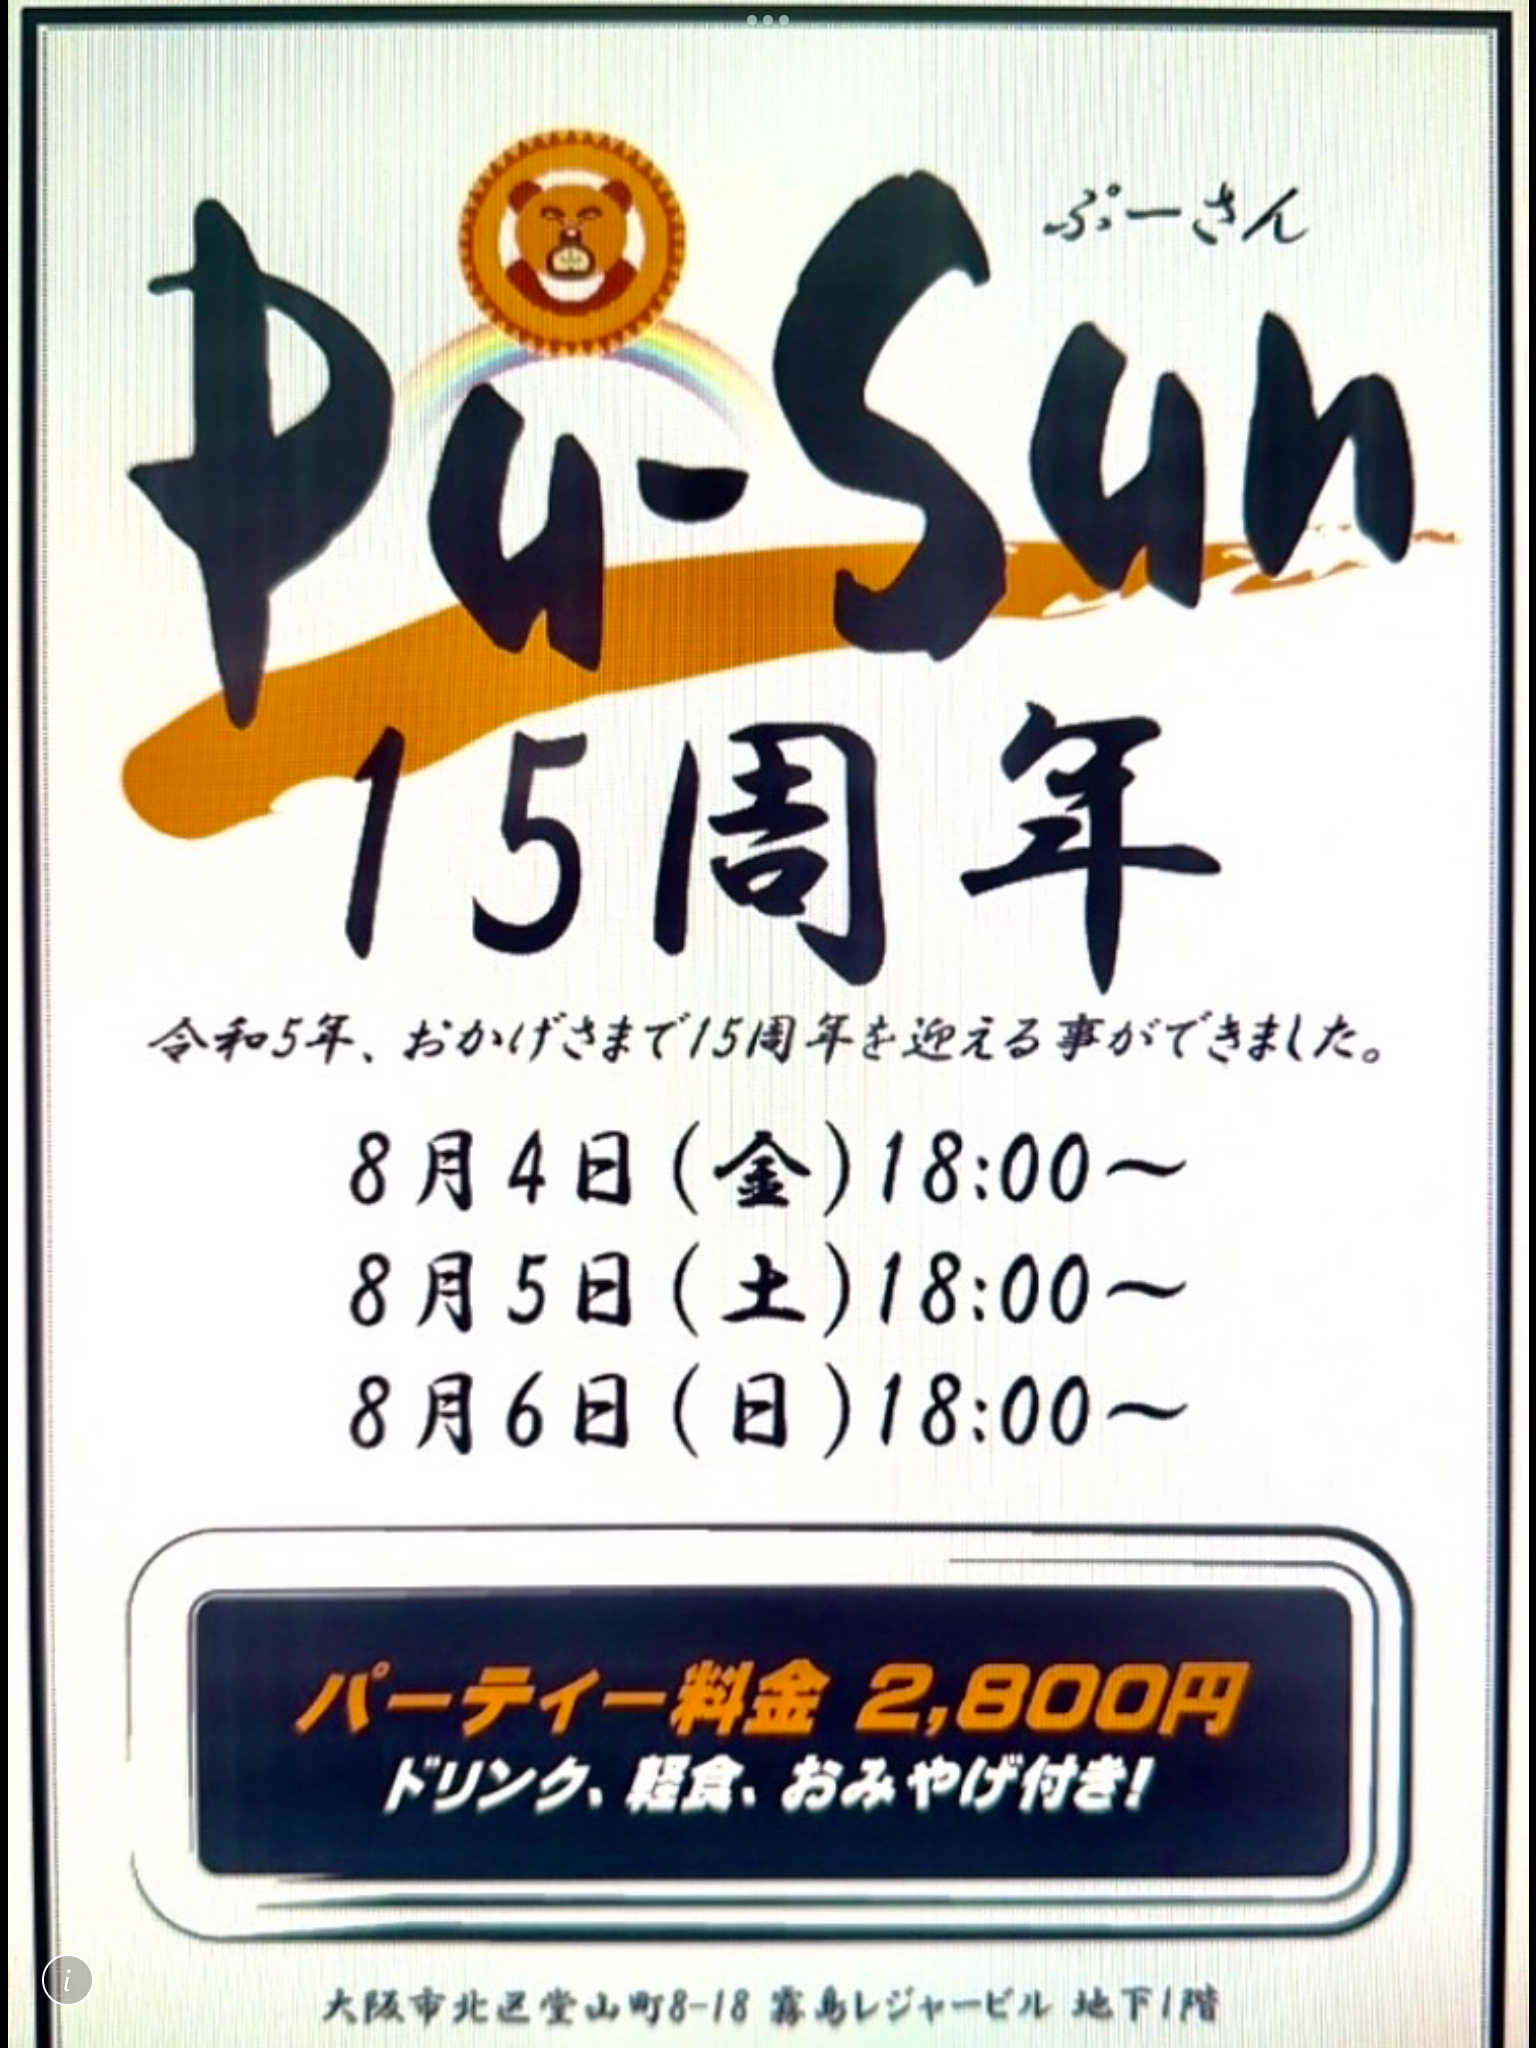 大阪PU-SUN15周年パーティー